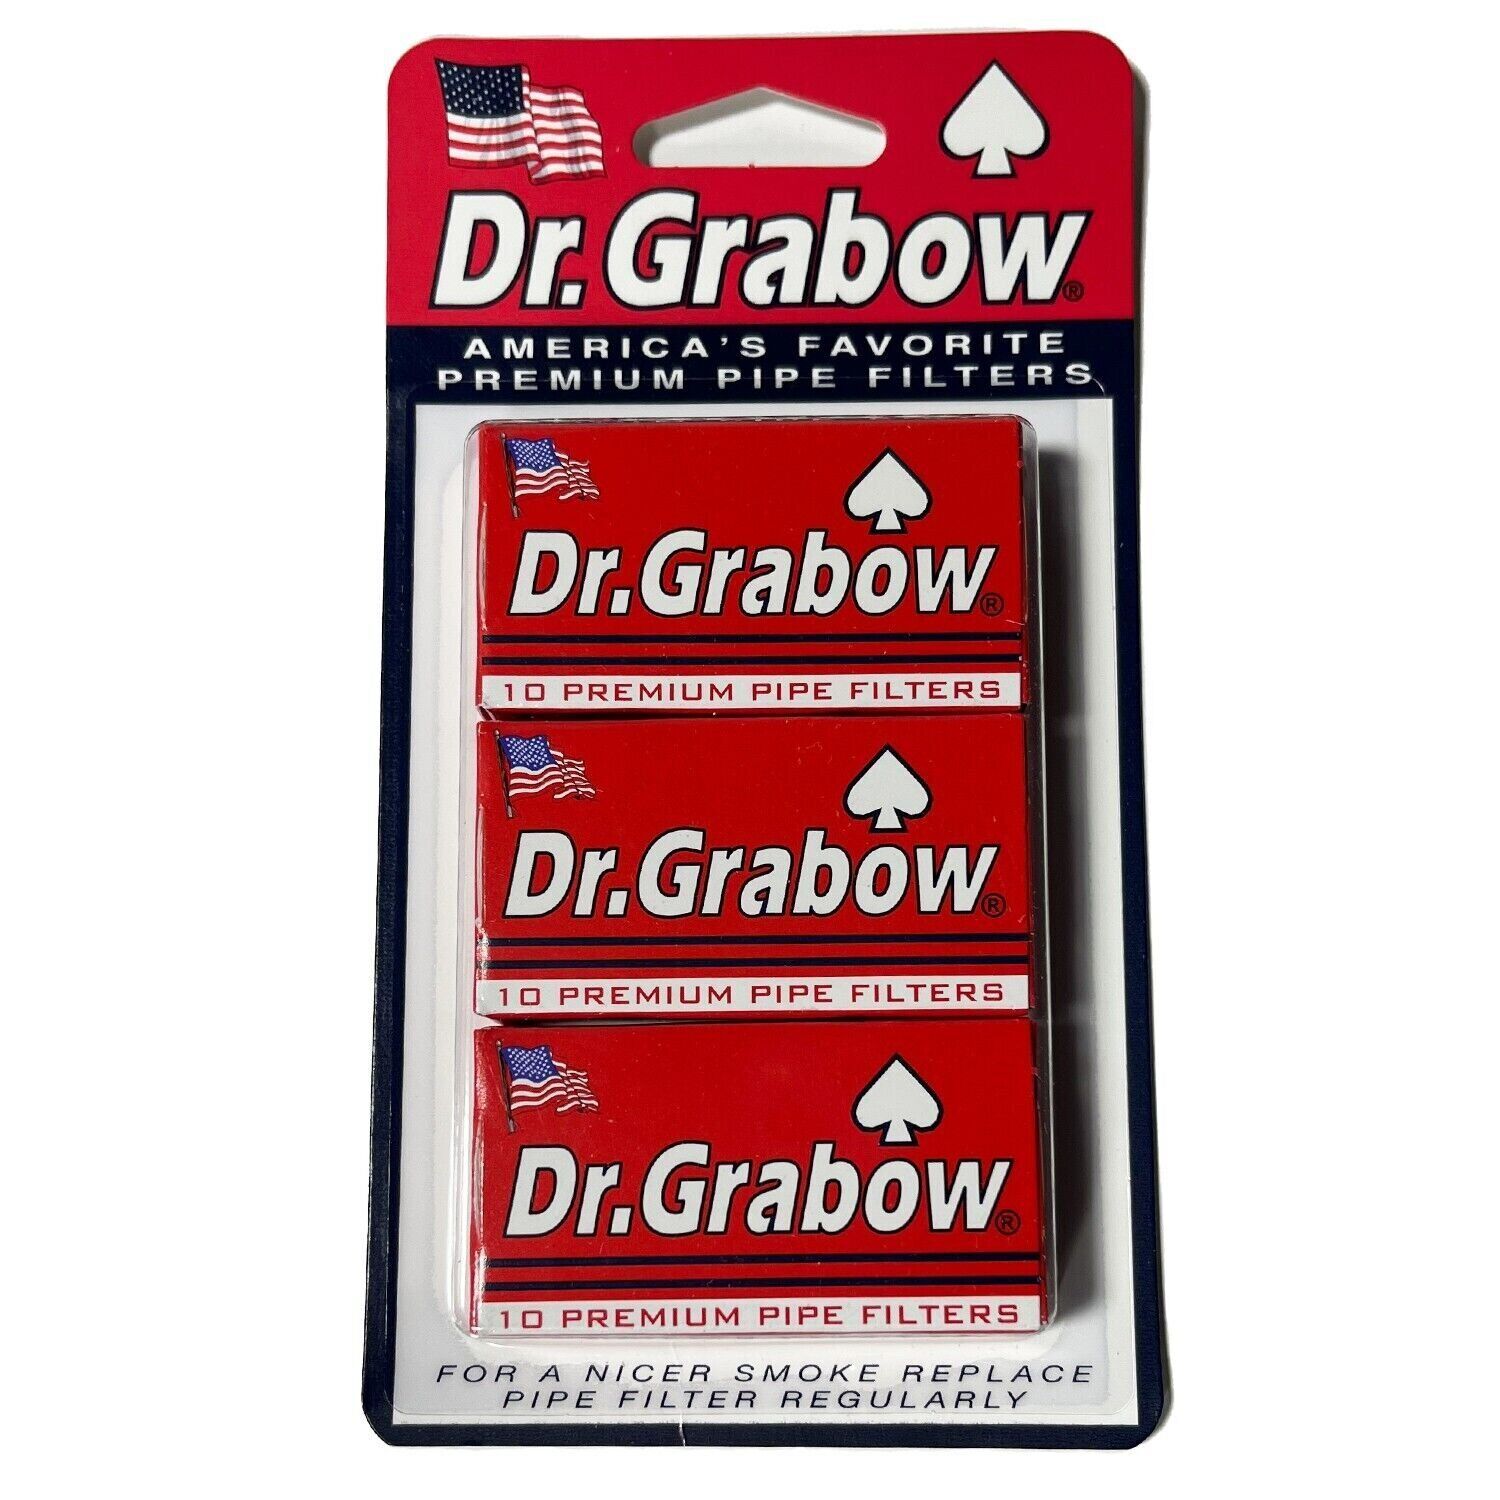 Dr. Grabow 10 Premium Pipe Filters - 3 Pack Display